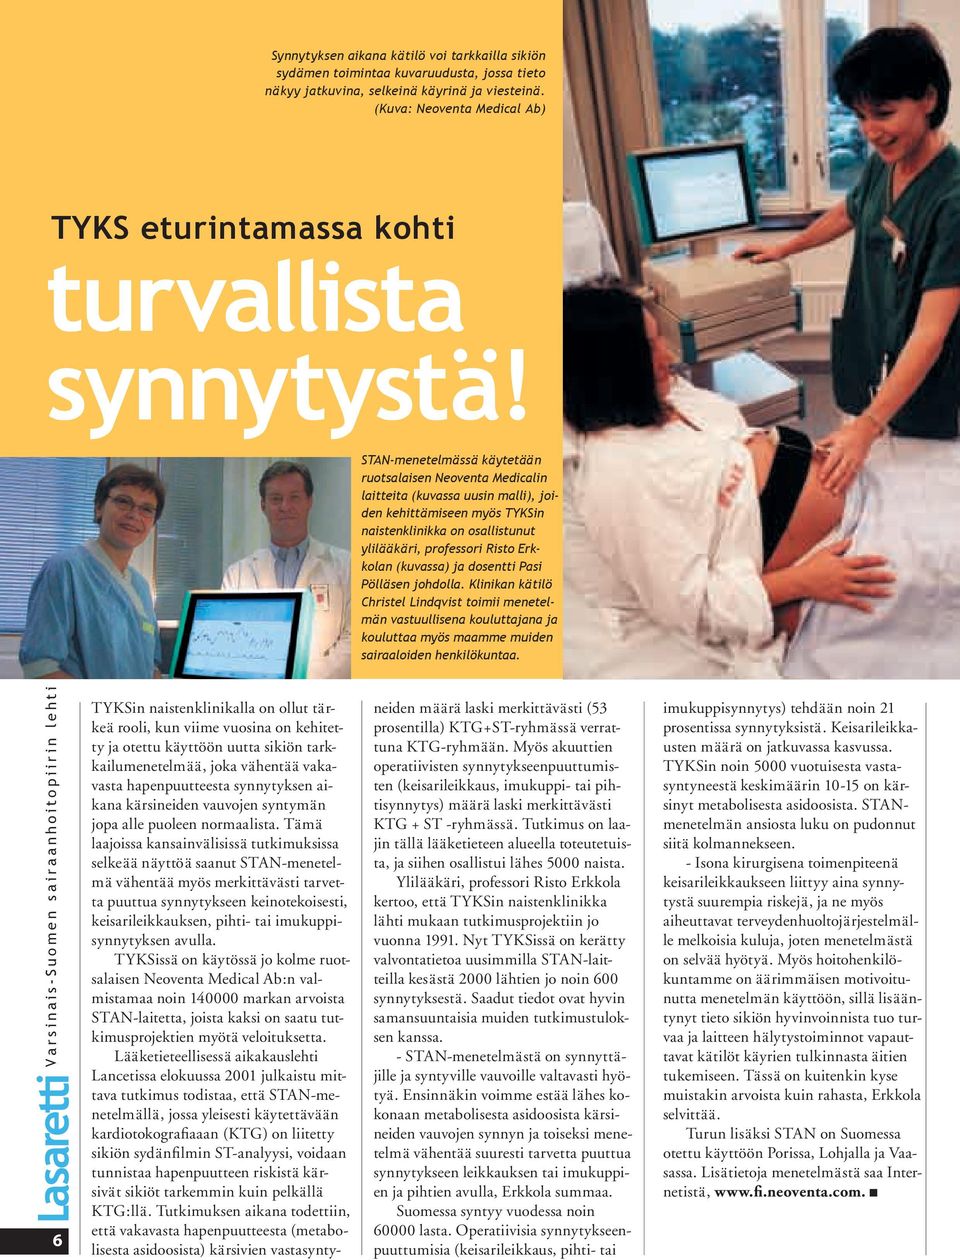 STAN-menetelmässä käytetään ruotsalaisen Neoventa Medicalin laitteita (kuvassa uusin malli), joiden kehittämiseen myös TYKSin naistenklinikka on osallistunut ylilääkäri, professori Risto Erkkolan